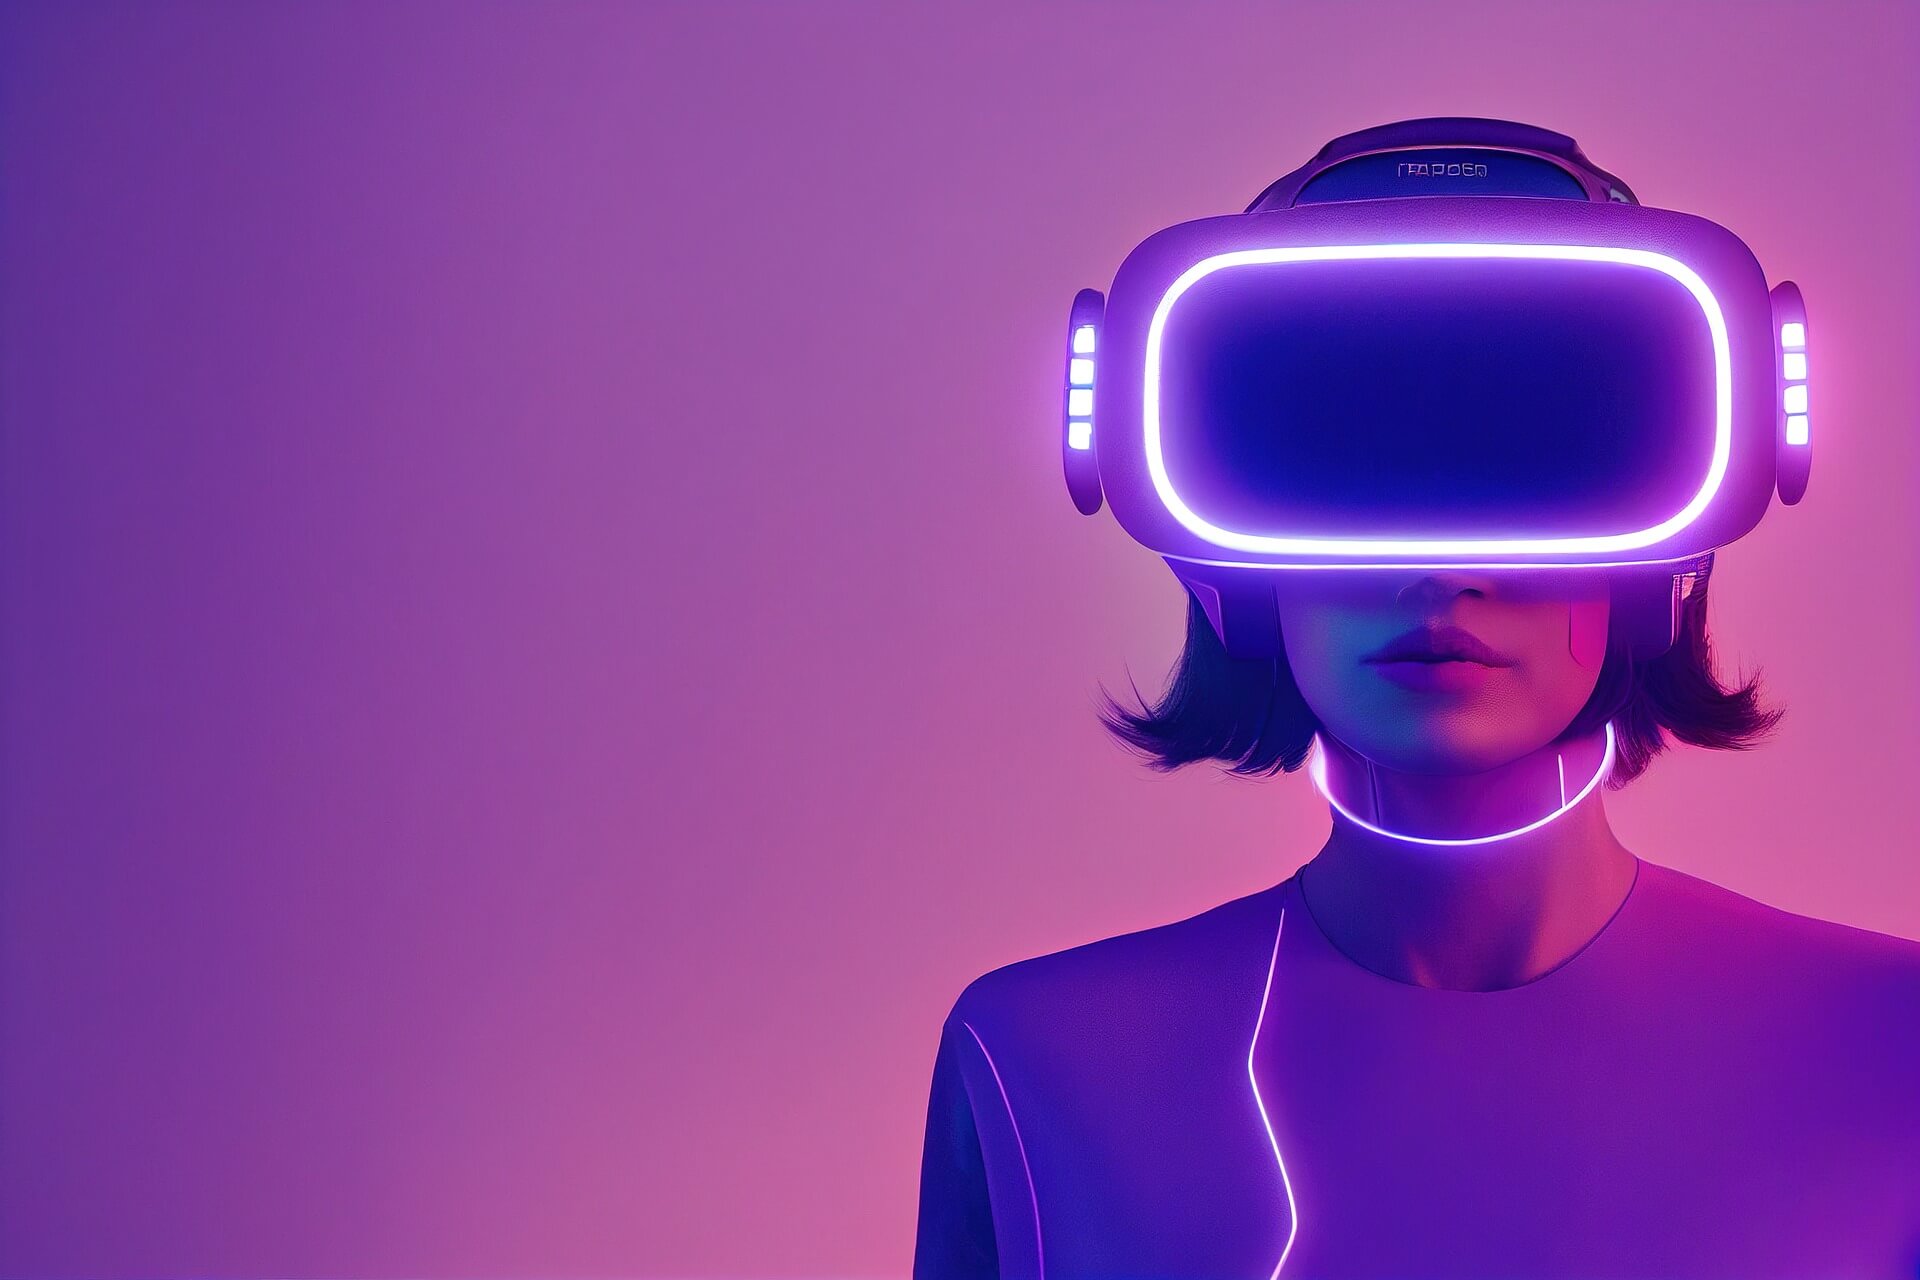 图片展示一位女士戴着虚拟现实头盔，紫色背景，科技感强烈，她似乎正在体验虚拟现实内容。